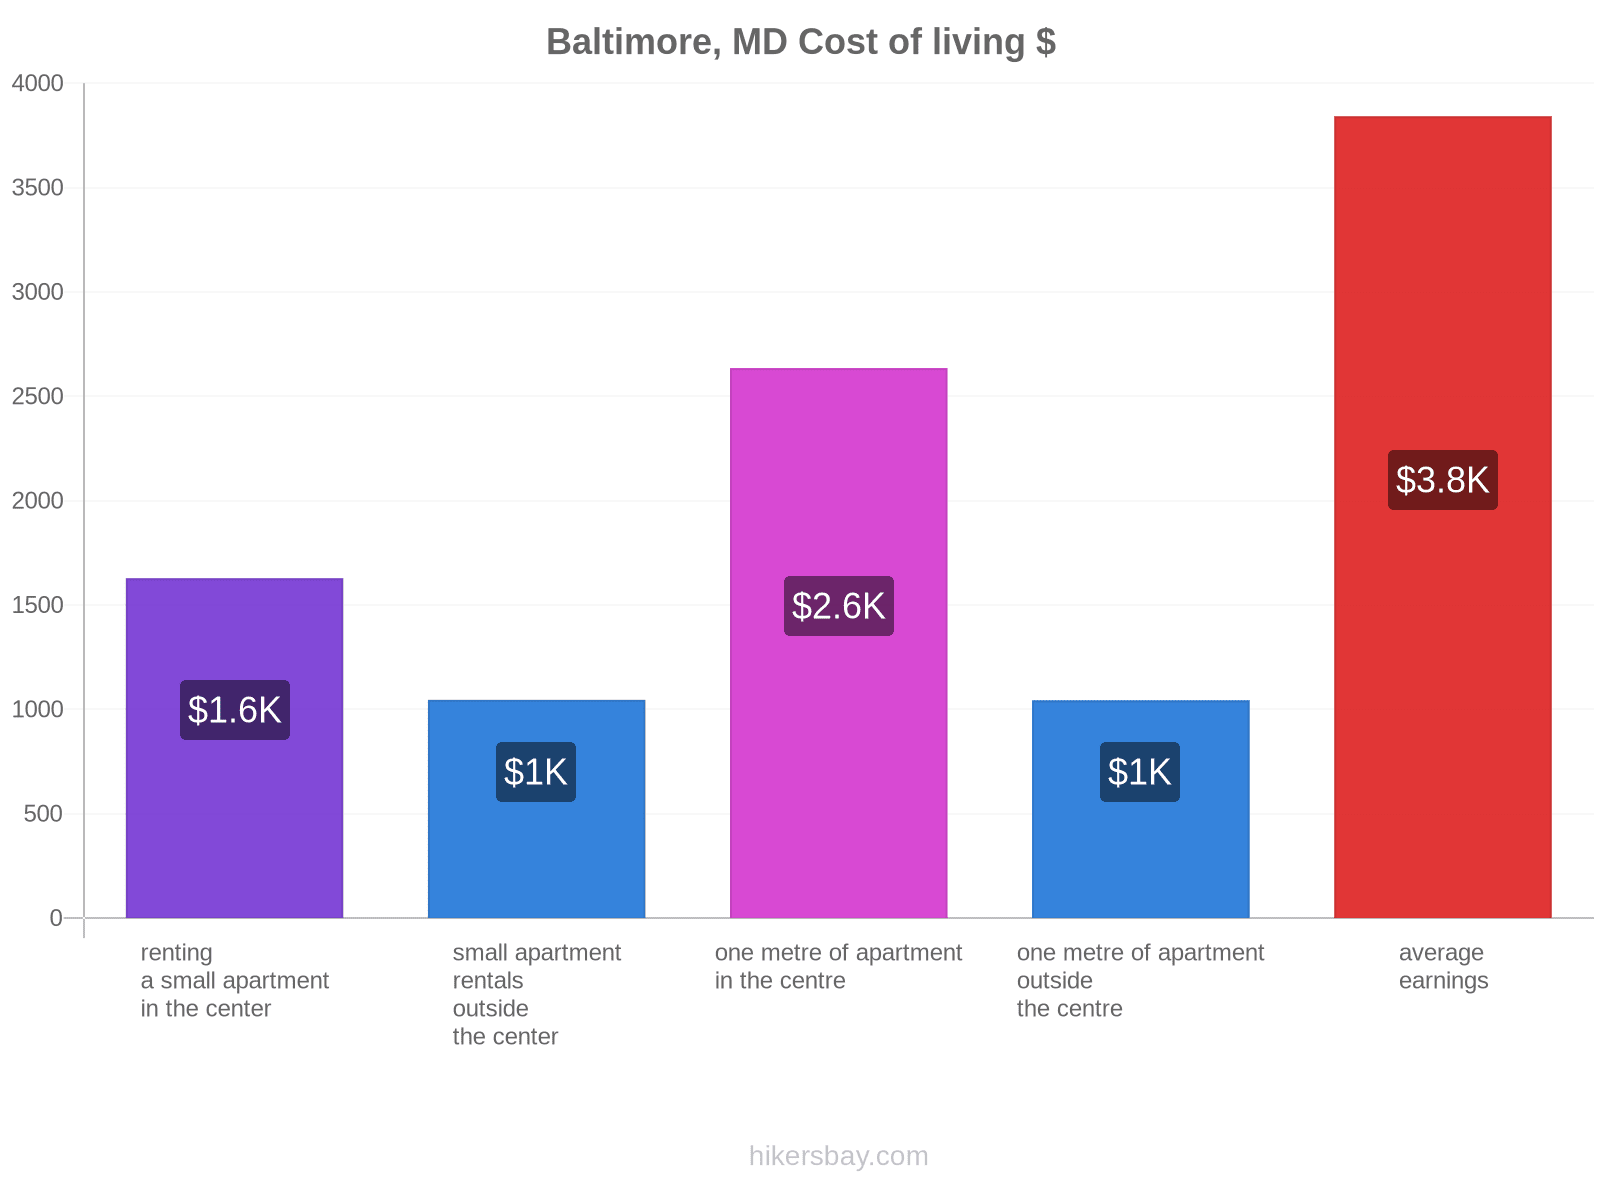 Baltimore, MD cost of living hikersbay.com